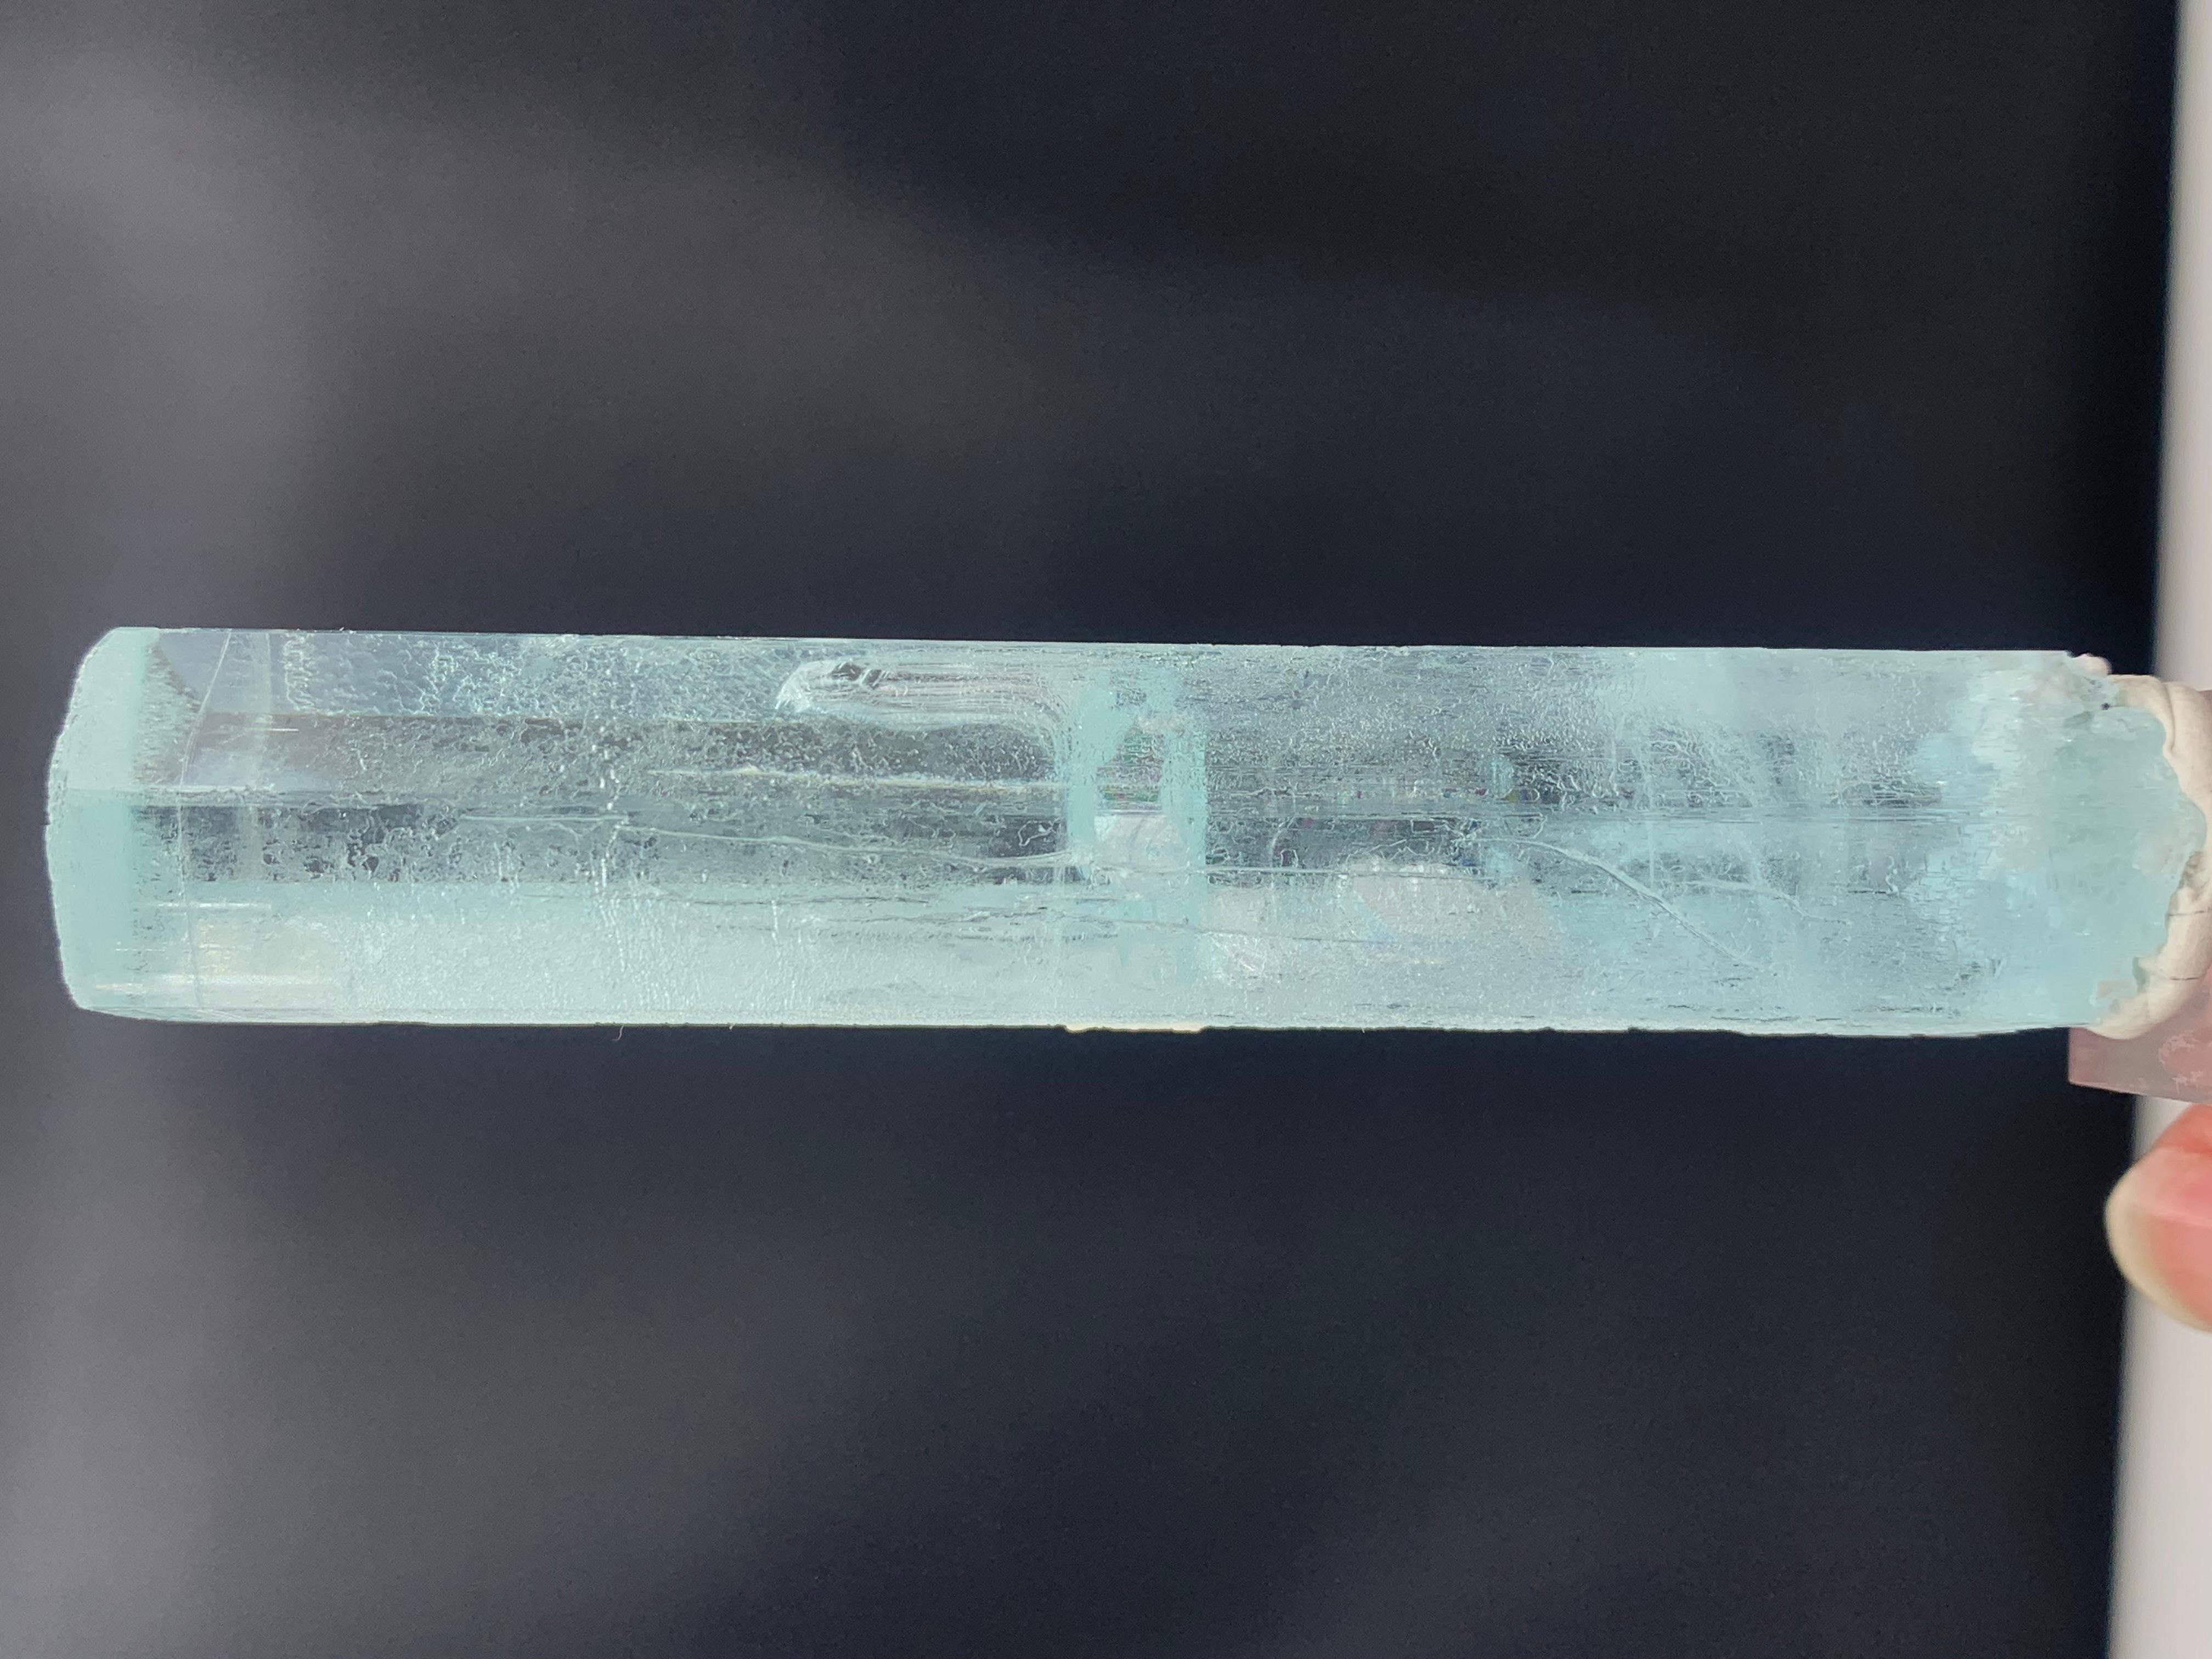 Magnifique cristal d'aigue-marine de la vallée de Nagar Gilgit, Pakistan
POIDS : 69,32 grammes
DIMENSIONS : 9,4 x 2,1 x 1,7 cm
ORIGINE : Vallée de Nagar, Gilgit Baltistan Pakistan 
TRAITEMENT : Aucun
L'aigue-marine est une variété de béryl de